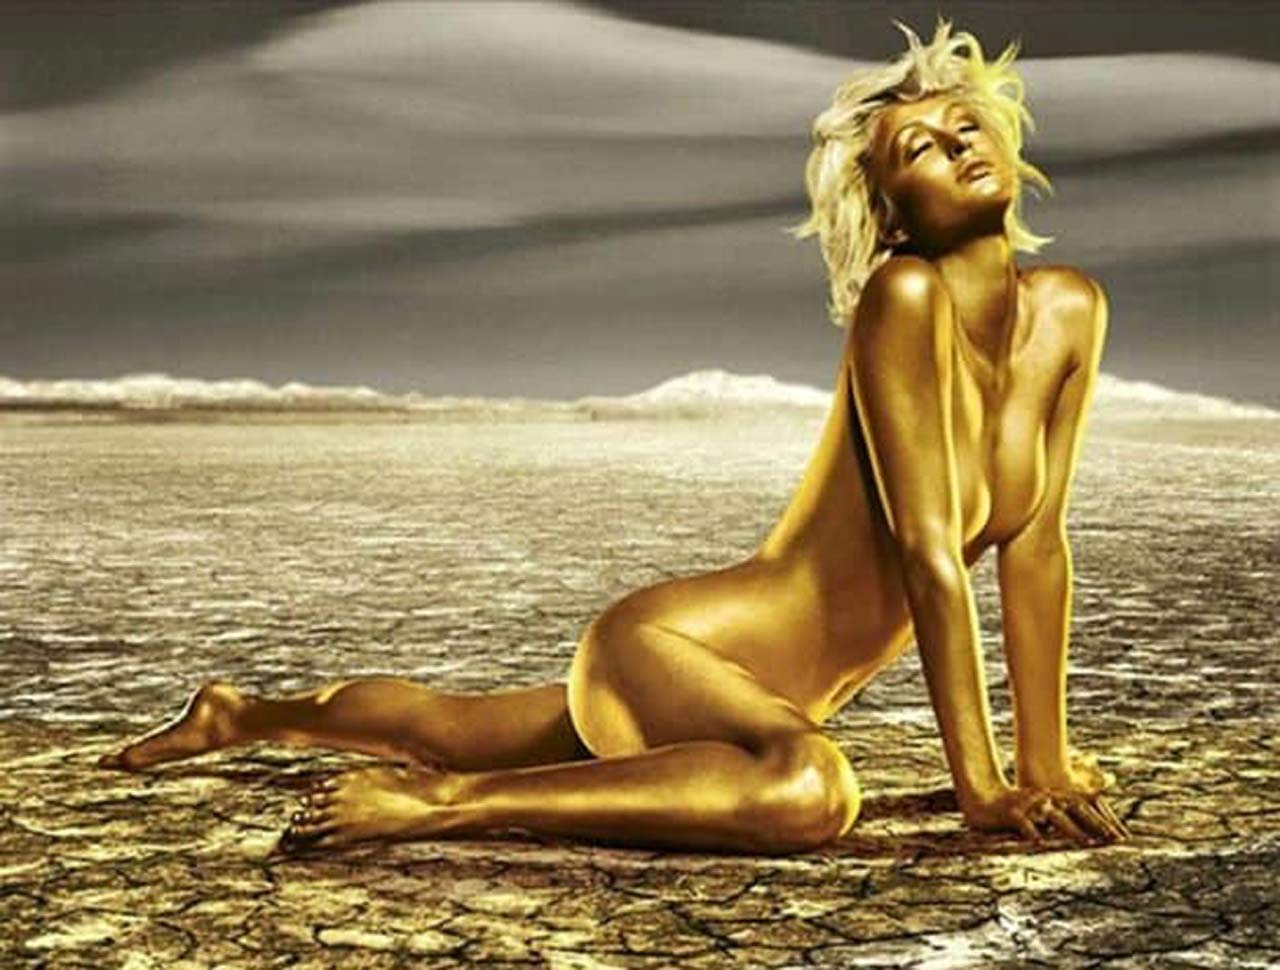 Paris Hilton Nude Pics And Famous Sex Tape Scandal Planet 5674